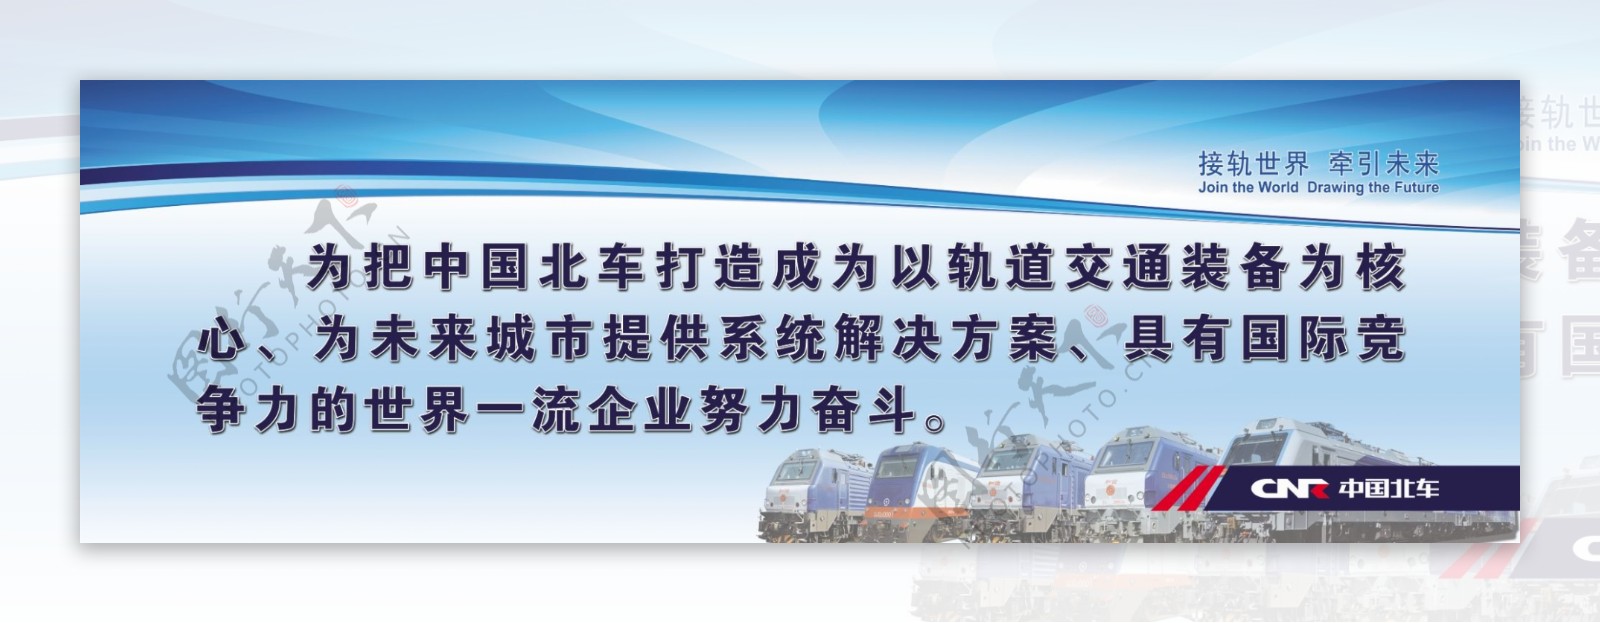 中国北车展板图片